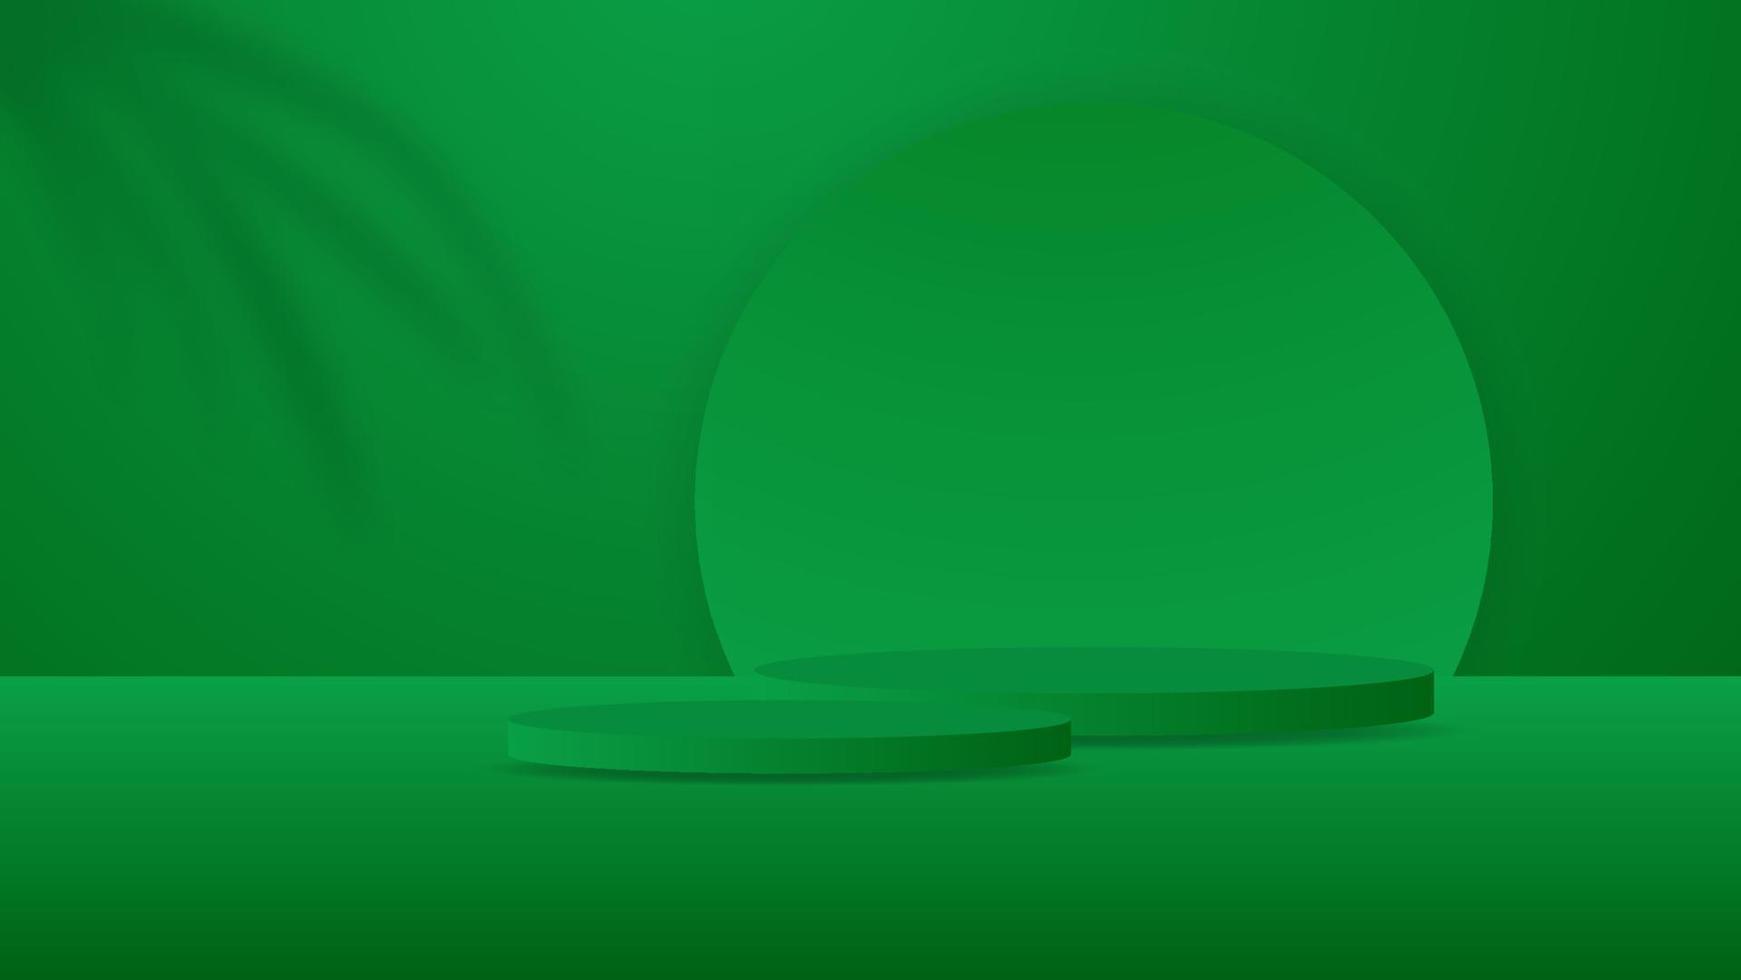 Vide rond piédestal. vert circulaire podium pour exceptionnel luxe produit vitrine afficher publicité sur Couleur Contexte avec minimal style dans studio pièce vecteur